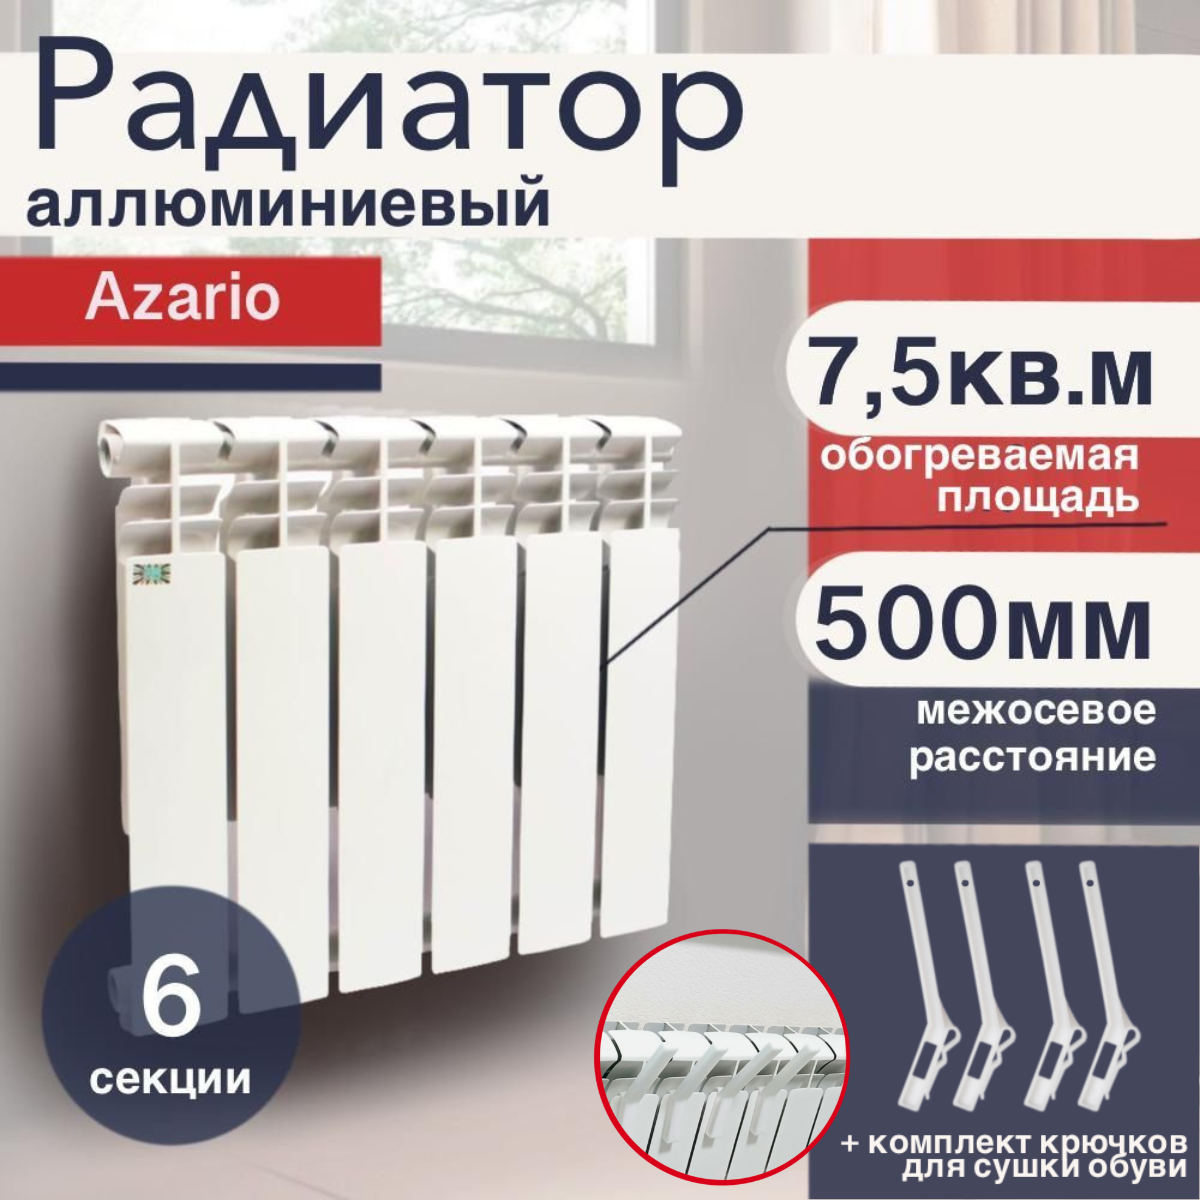 Радиатор отопления алюминиевый, секционный, Azario, Classic, 6 секций,  80/500, с крючками для сушки обуви — купить в интернет-магазине по низкой  цене на Яндекс Маркете